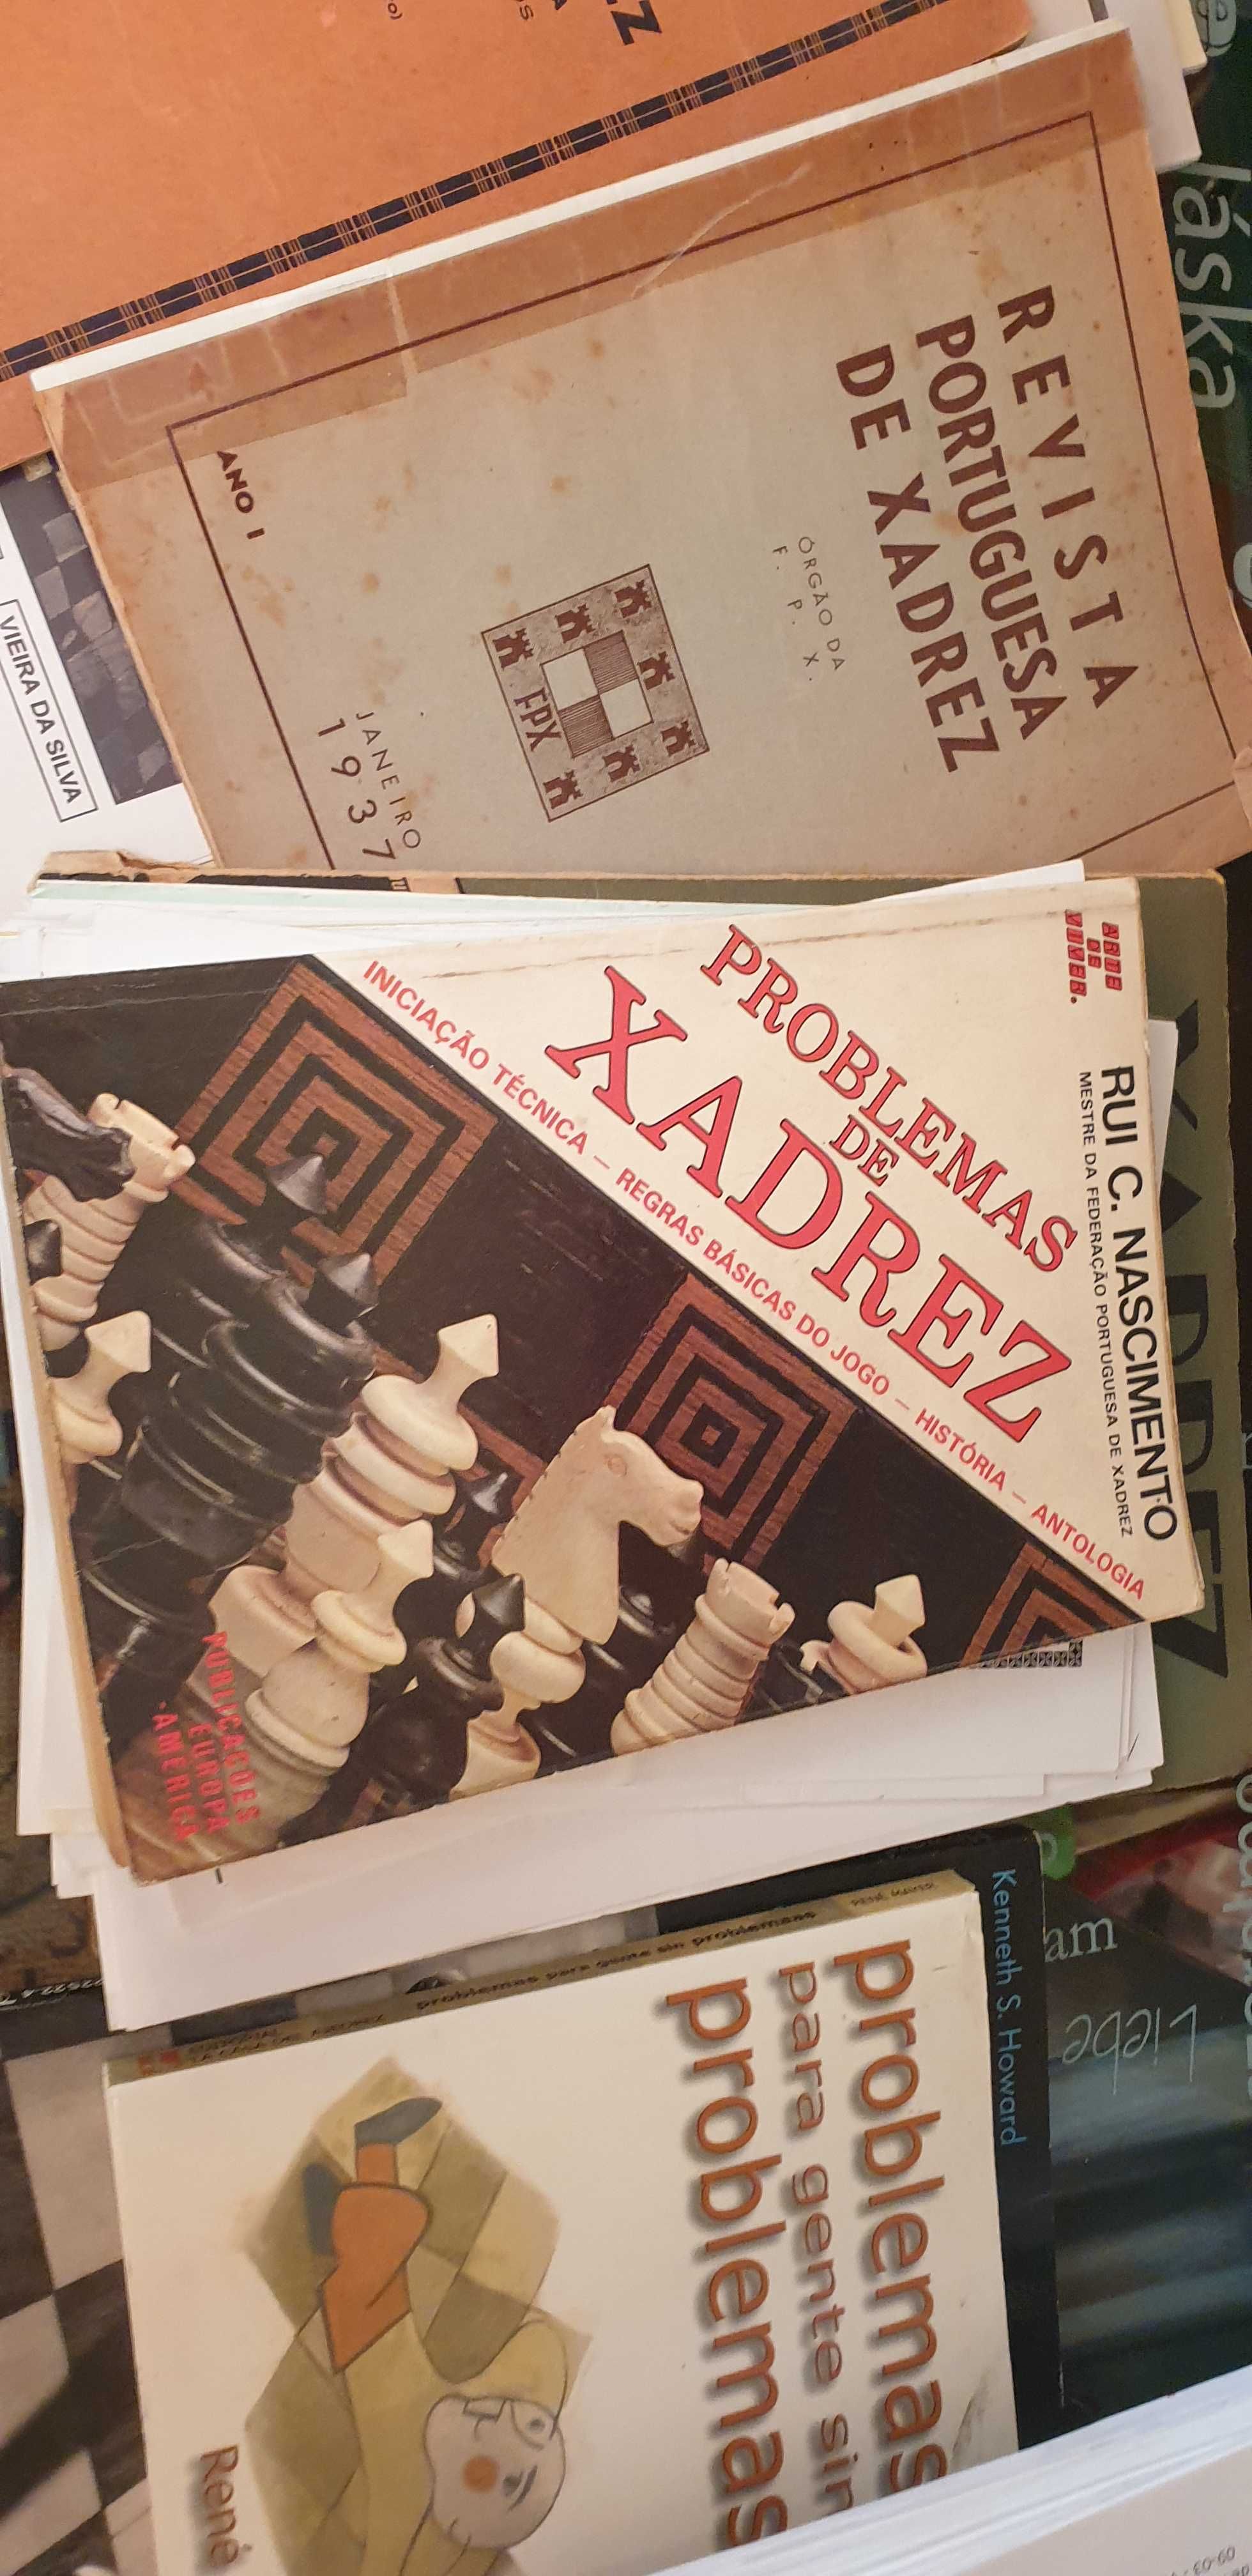 Diversos Livros de xadrez de problemas e iniciação Técnica. Areeiro • OLX  Portugal